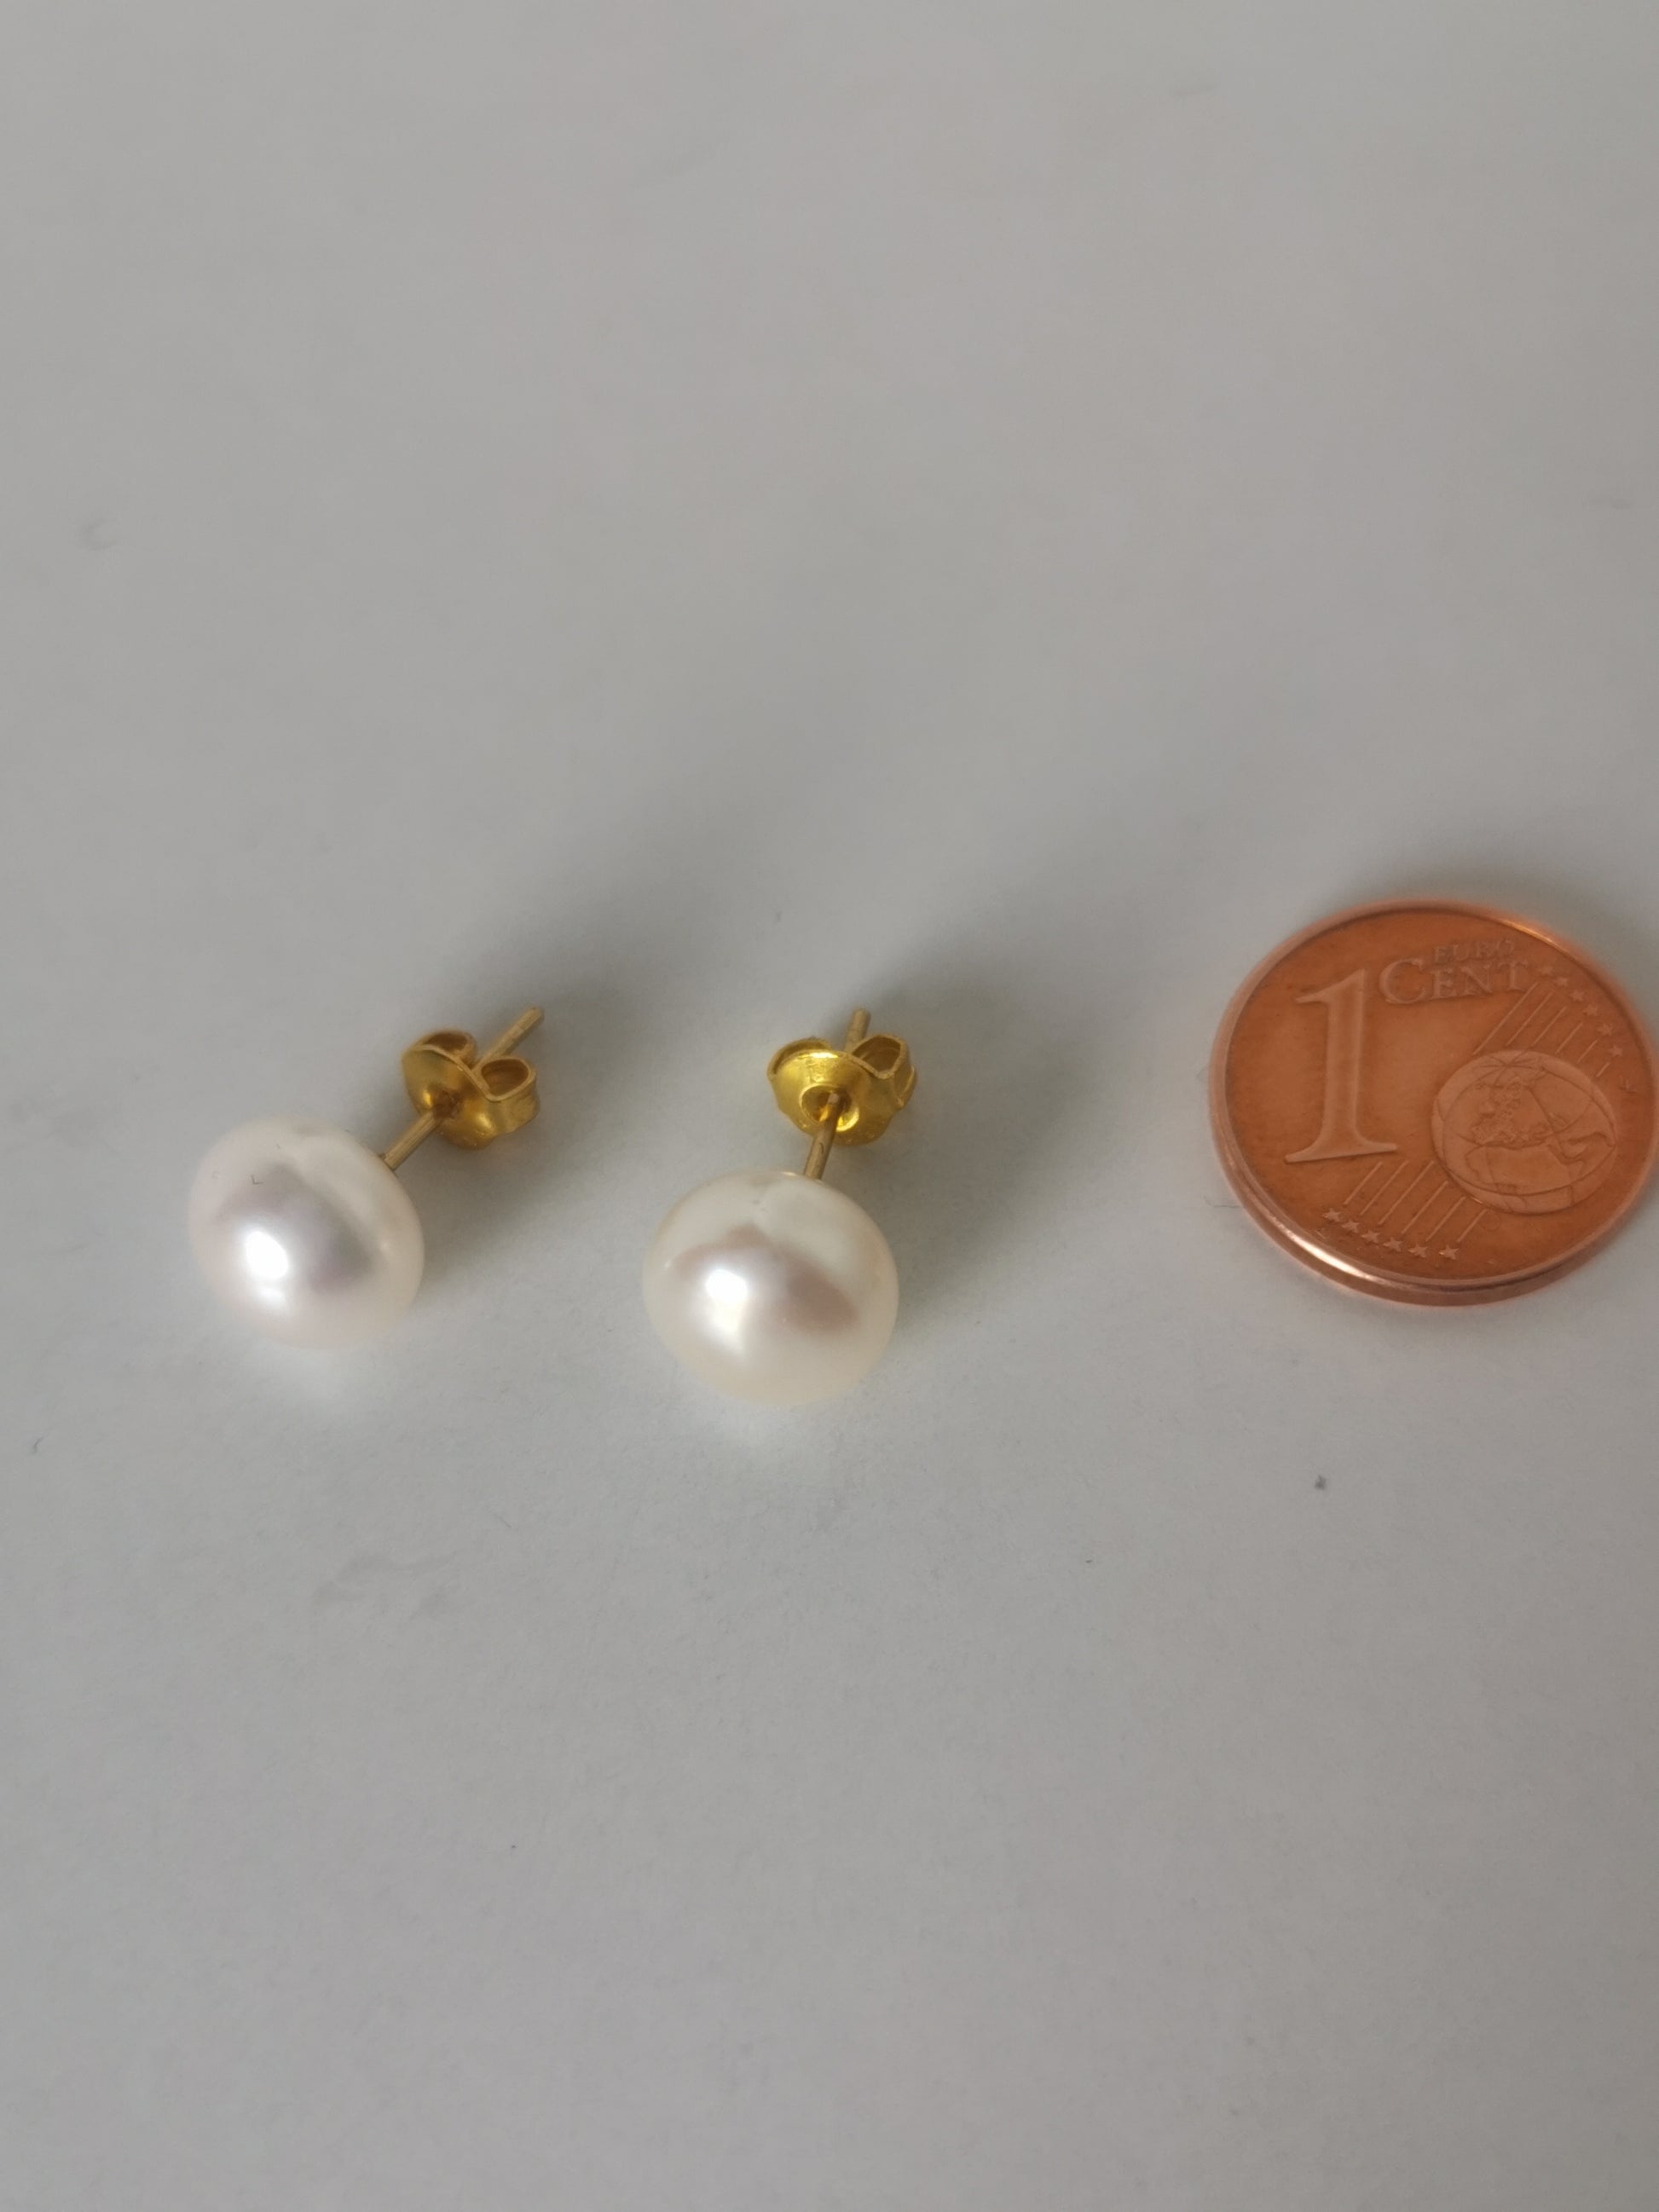 Boucles d'oreilles perles de culture blanches 9mm montées sur clous plaqués or. Présentées cote à cote, perles en bas, posées sur un fond blanc. A leur droite est posée une pièce de 1 centime. Vue de dessus.